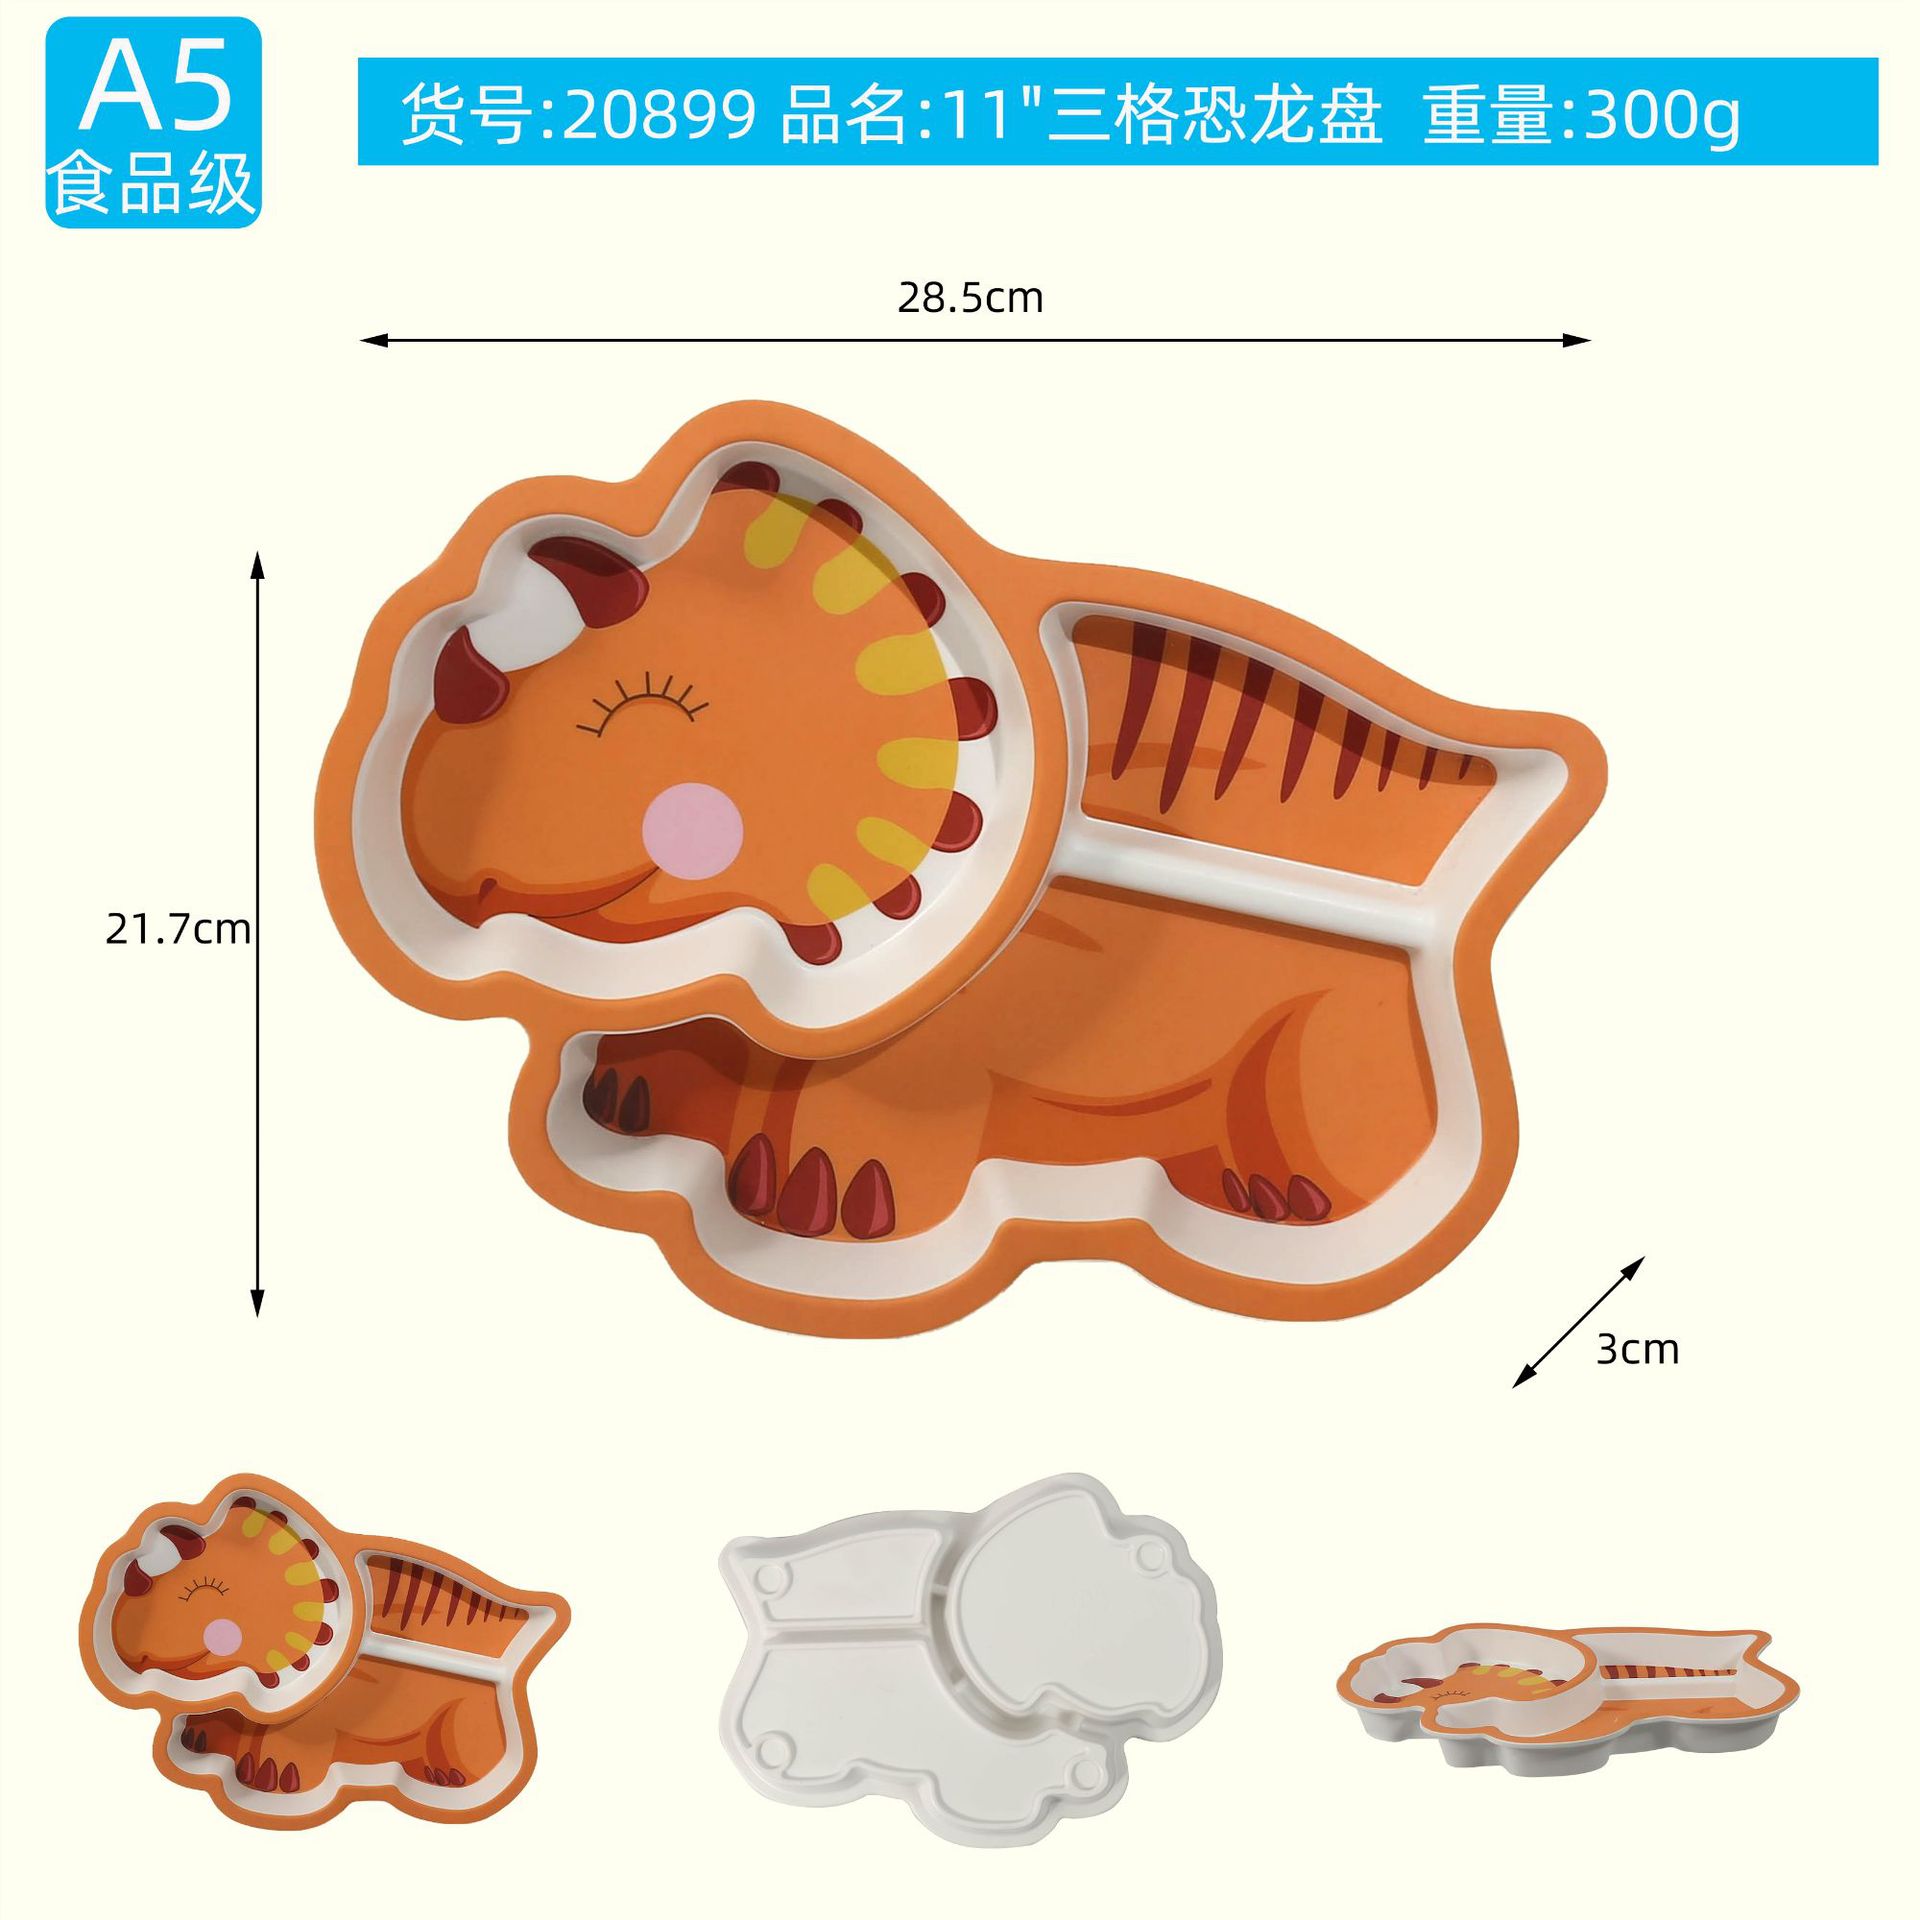 Bộ đồ ăn trẻ em bằng sợi tre hình khủng long hoạt hình dễ thương | Khay 3 ngăn, thìa, dĩa, cốc